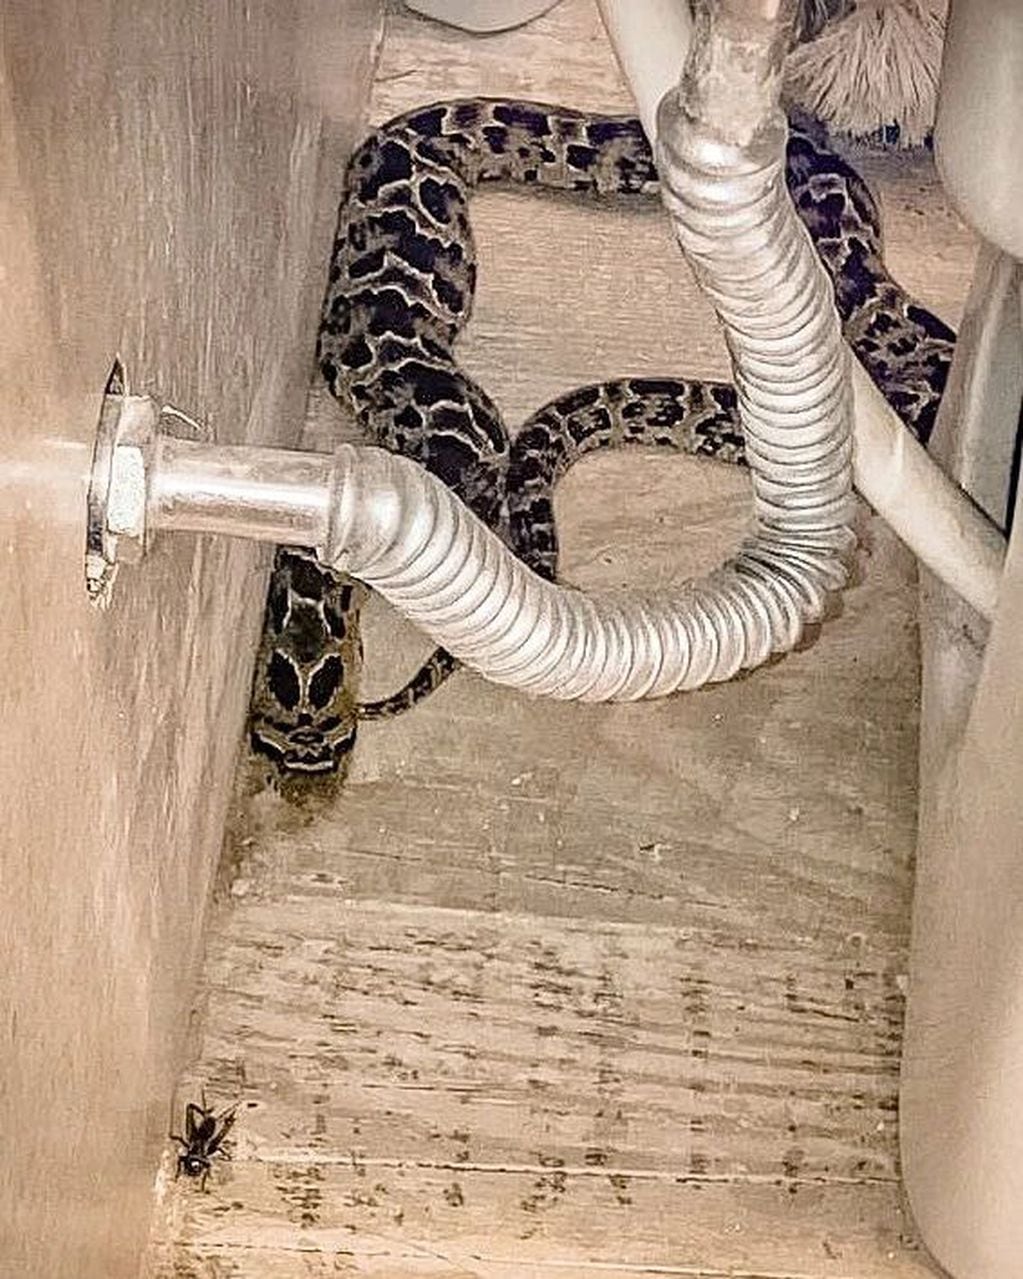 La serpiente estaba dentro del baño.